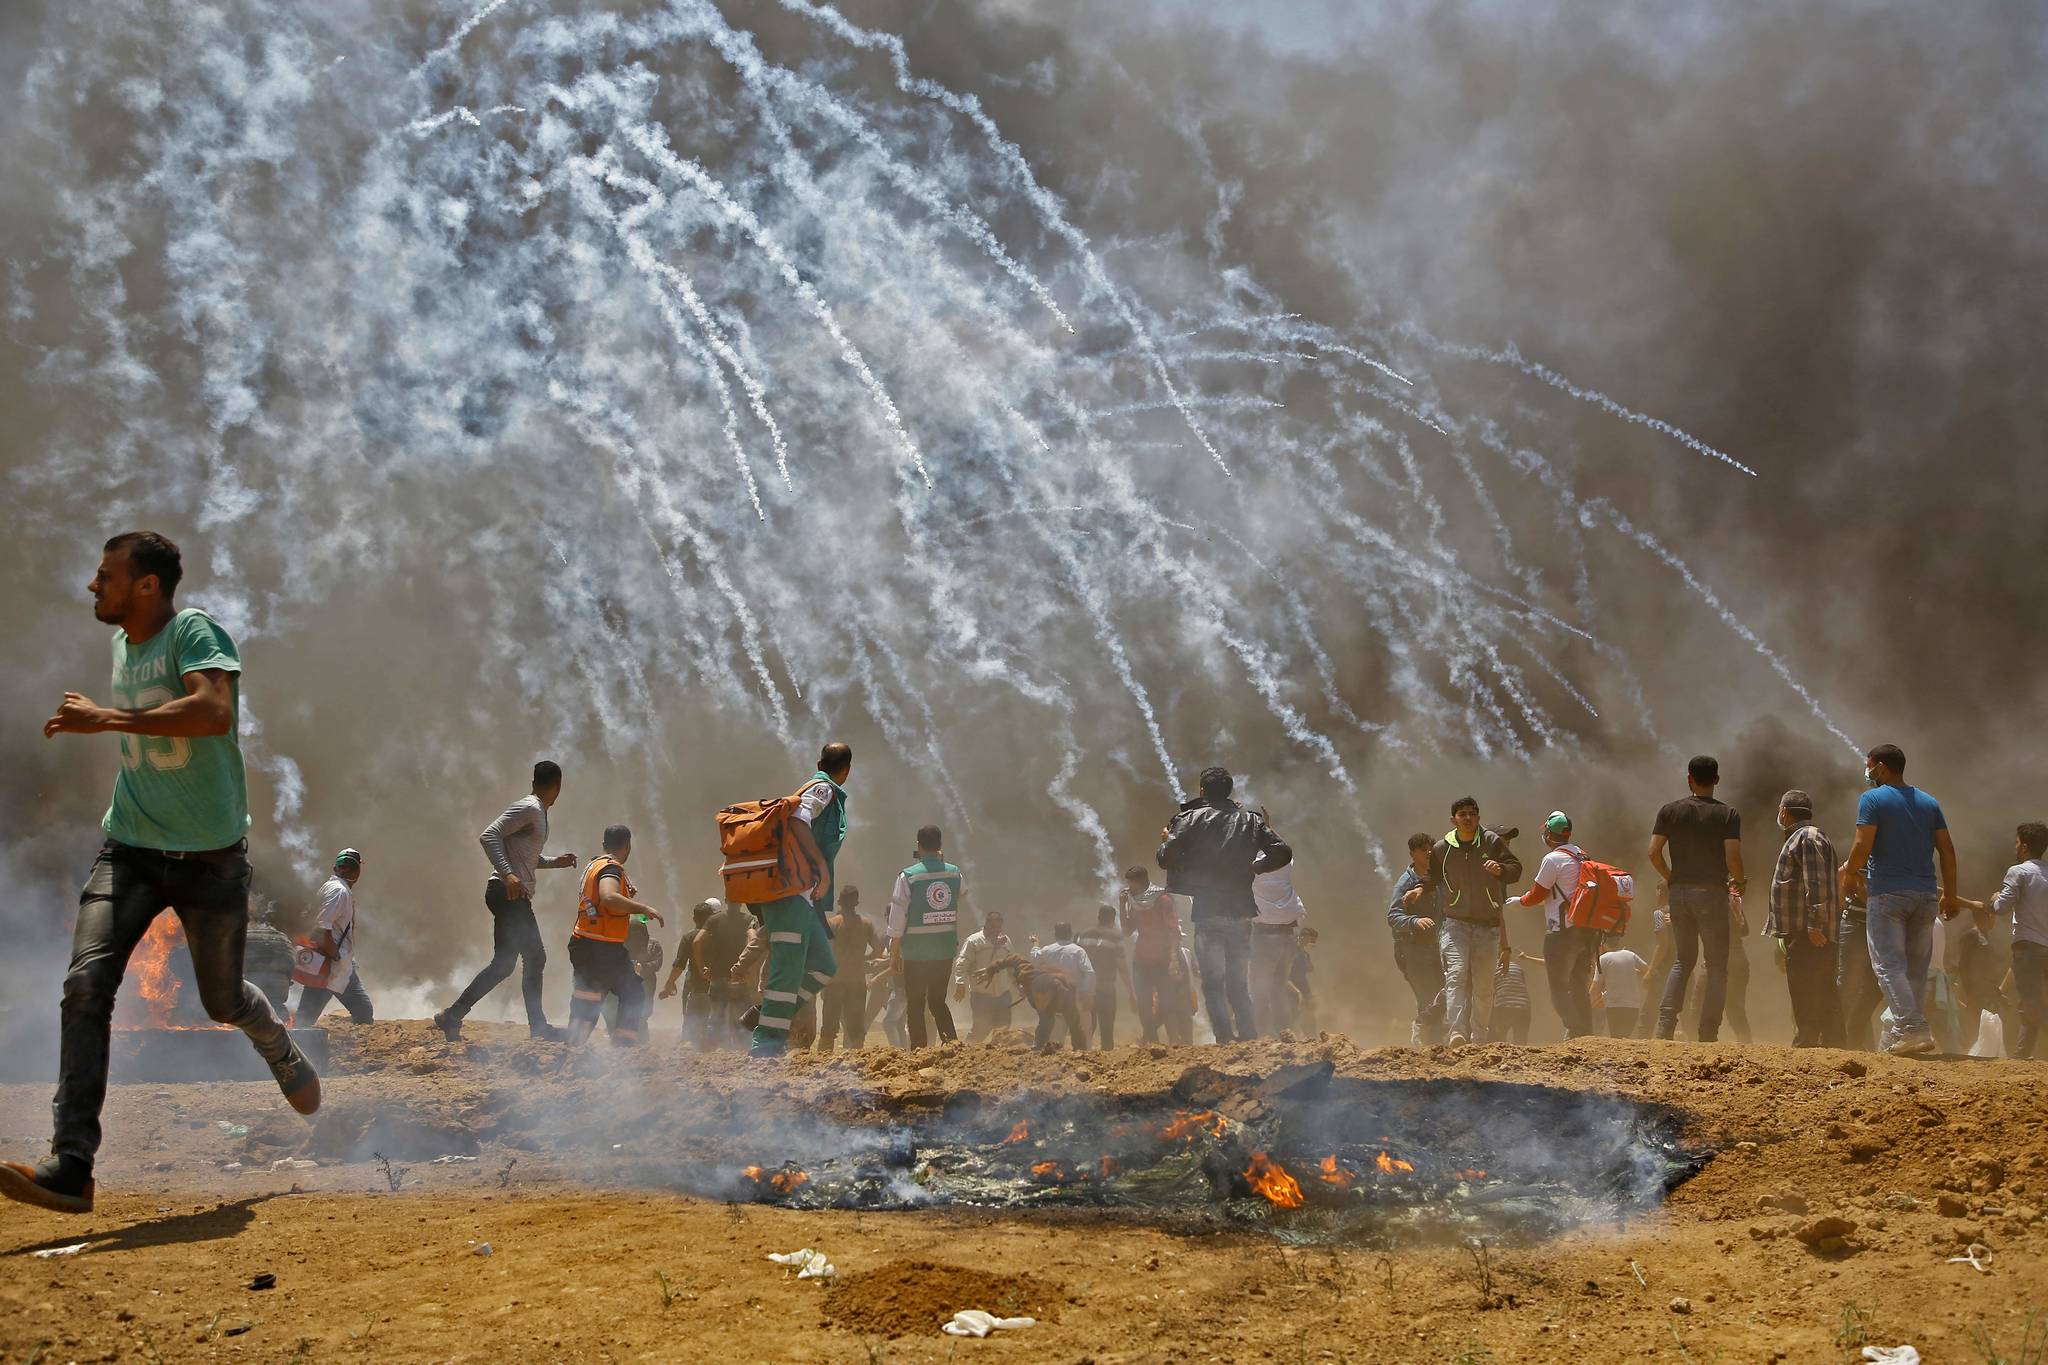 팔레스타인들이 이스라엘 군이 최루탄을 발사하자 몸을 피하고 있다. [AFP=연합뉴스]